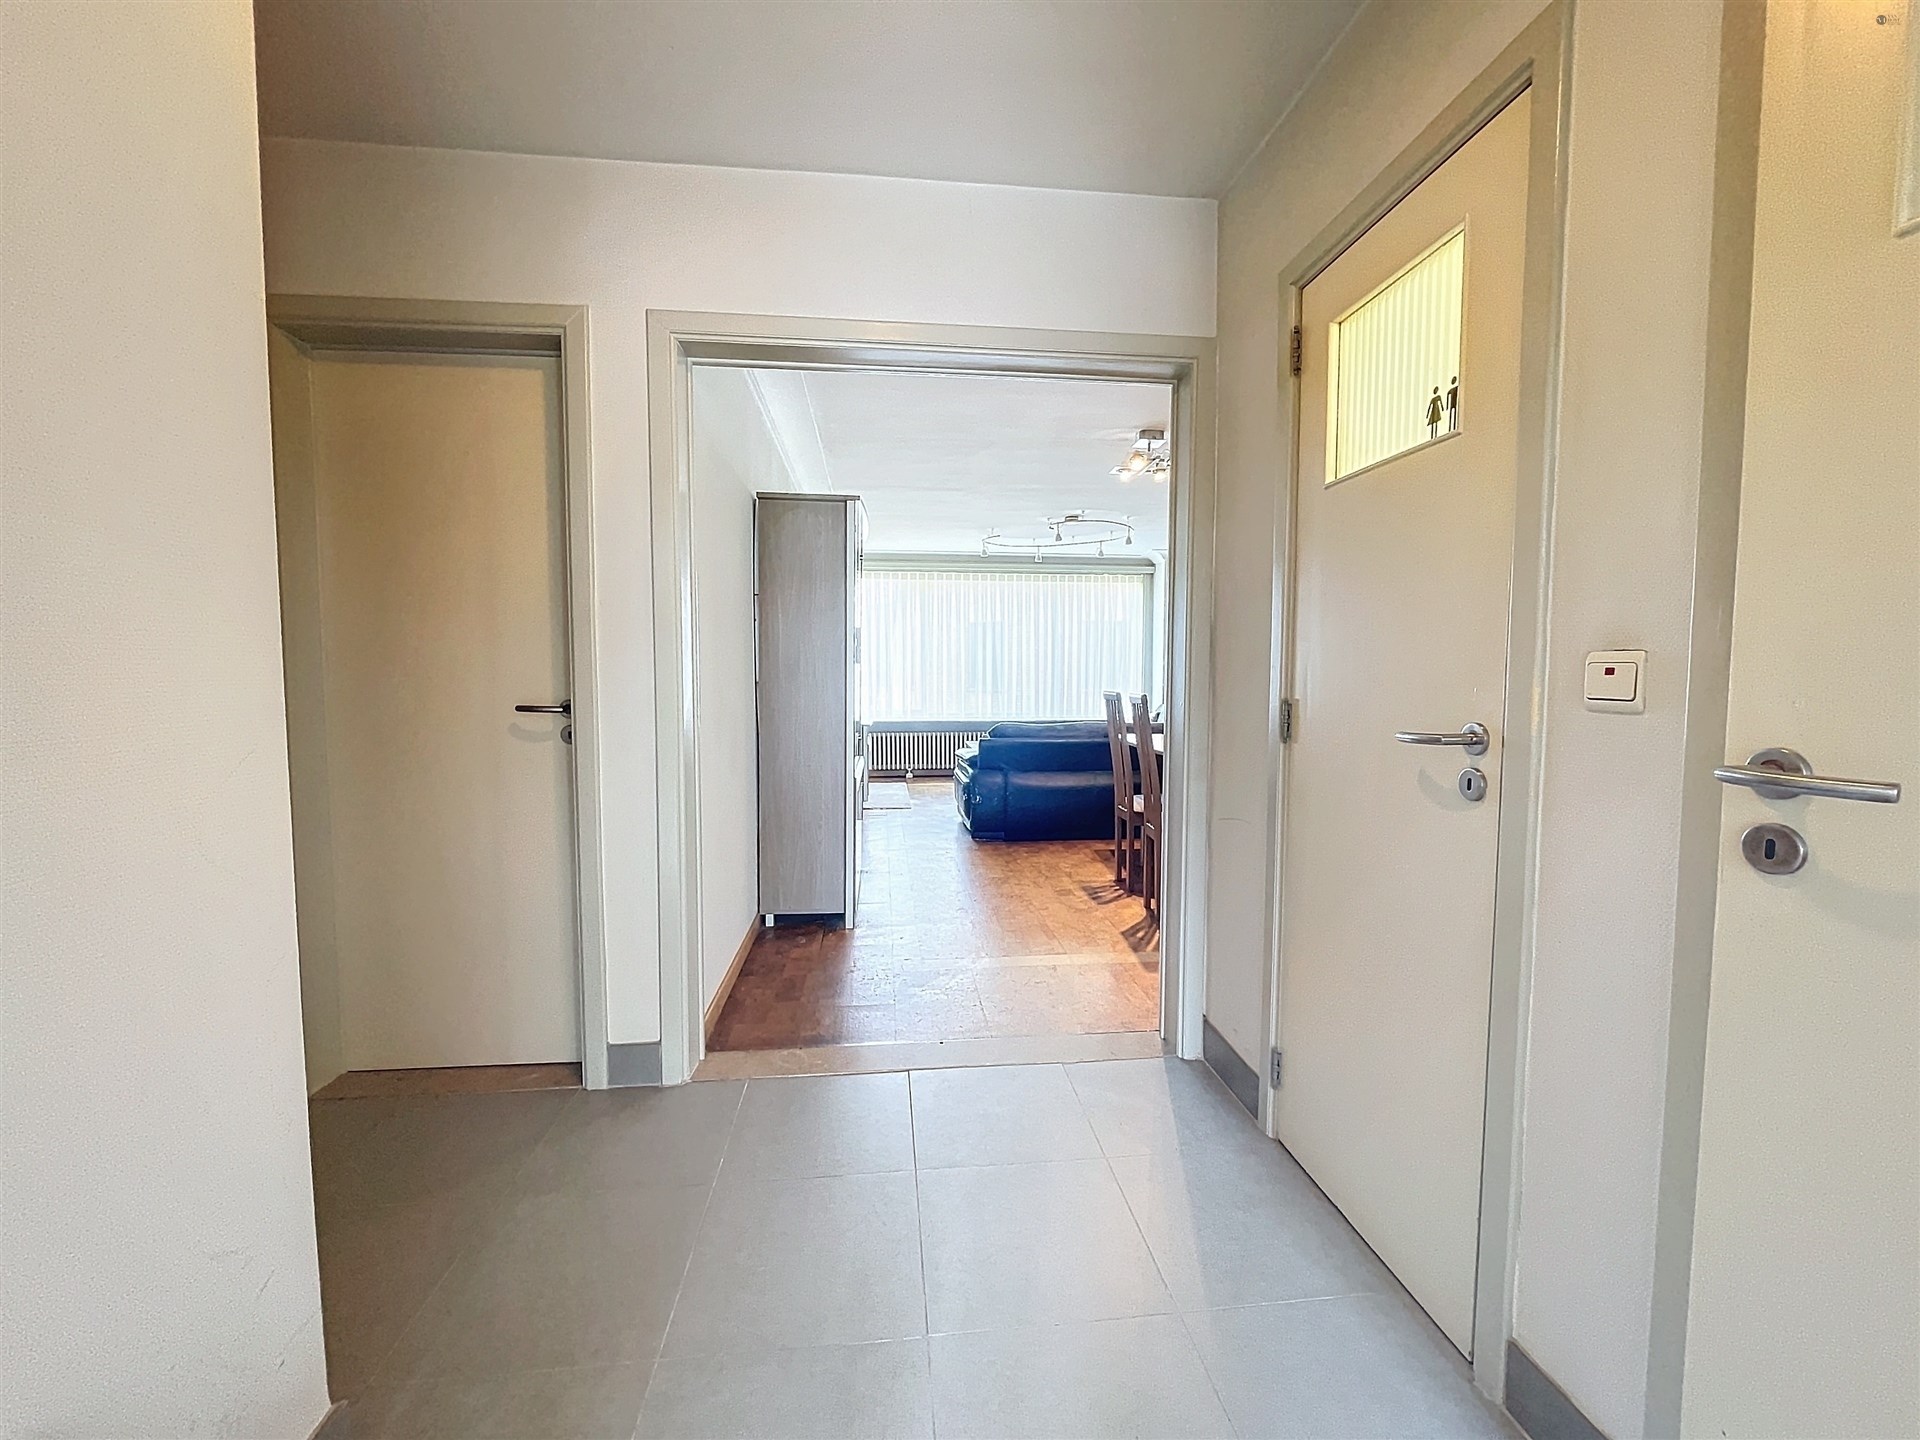 2-slaapkamer appartement met terras op toplocatie in centrum Sint-Niklaas foto 4